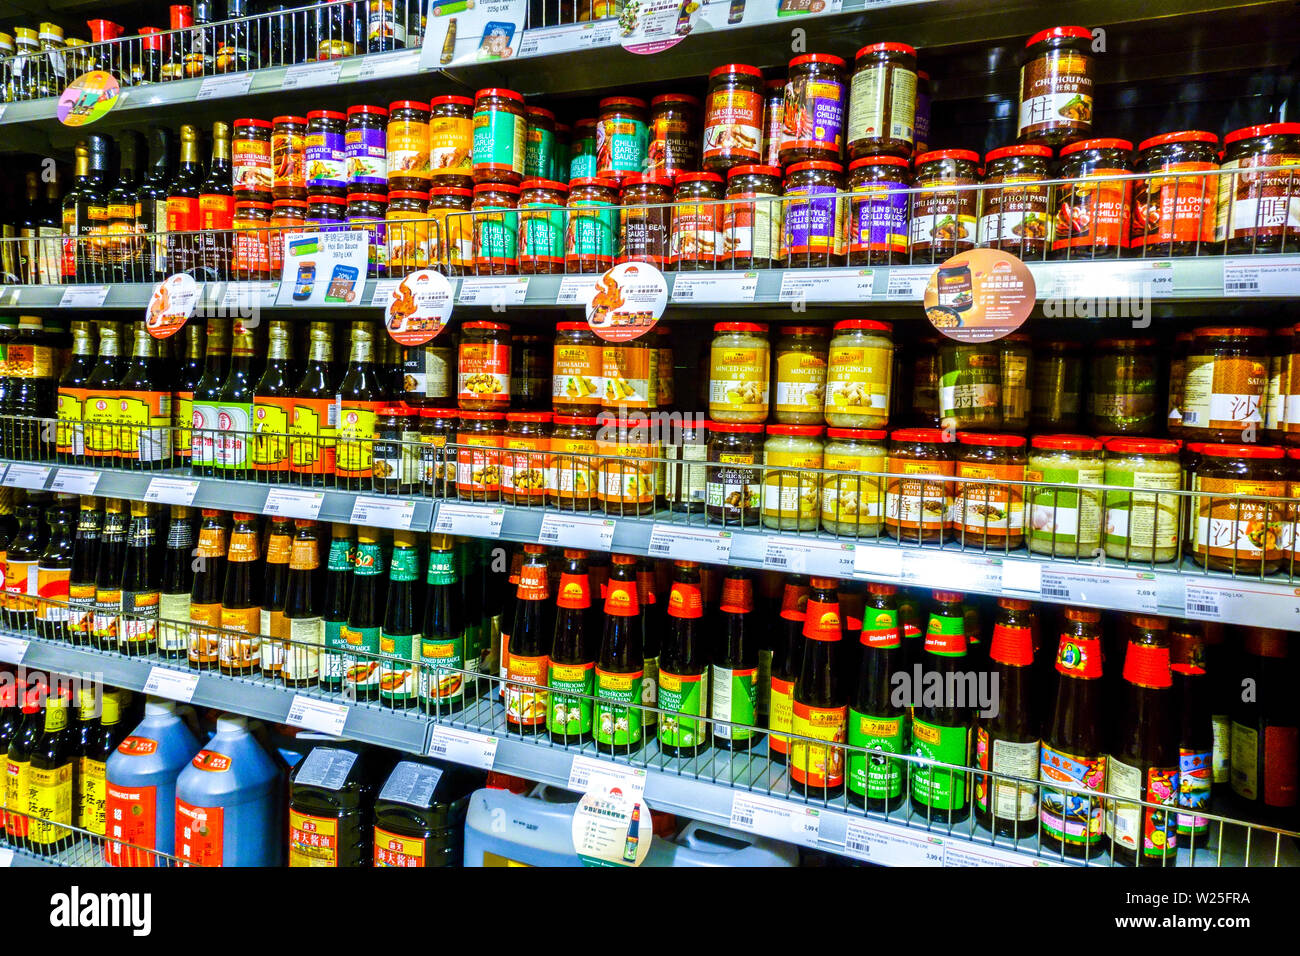 Supermarché asiatique 'Go Asia' étagères de supermarché, nourriture, Dresde, Allemagne rayons de boissons Banque D'Images